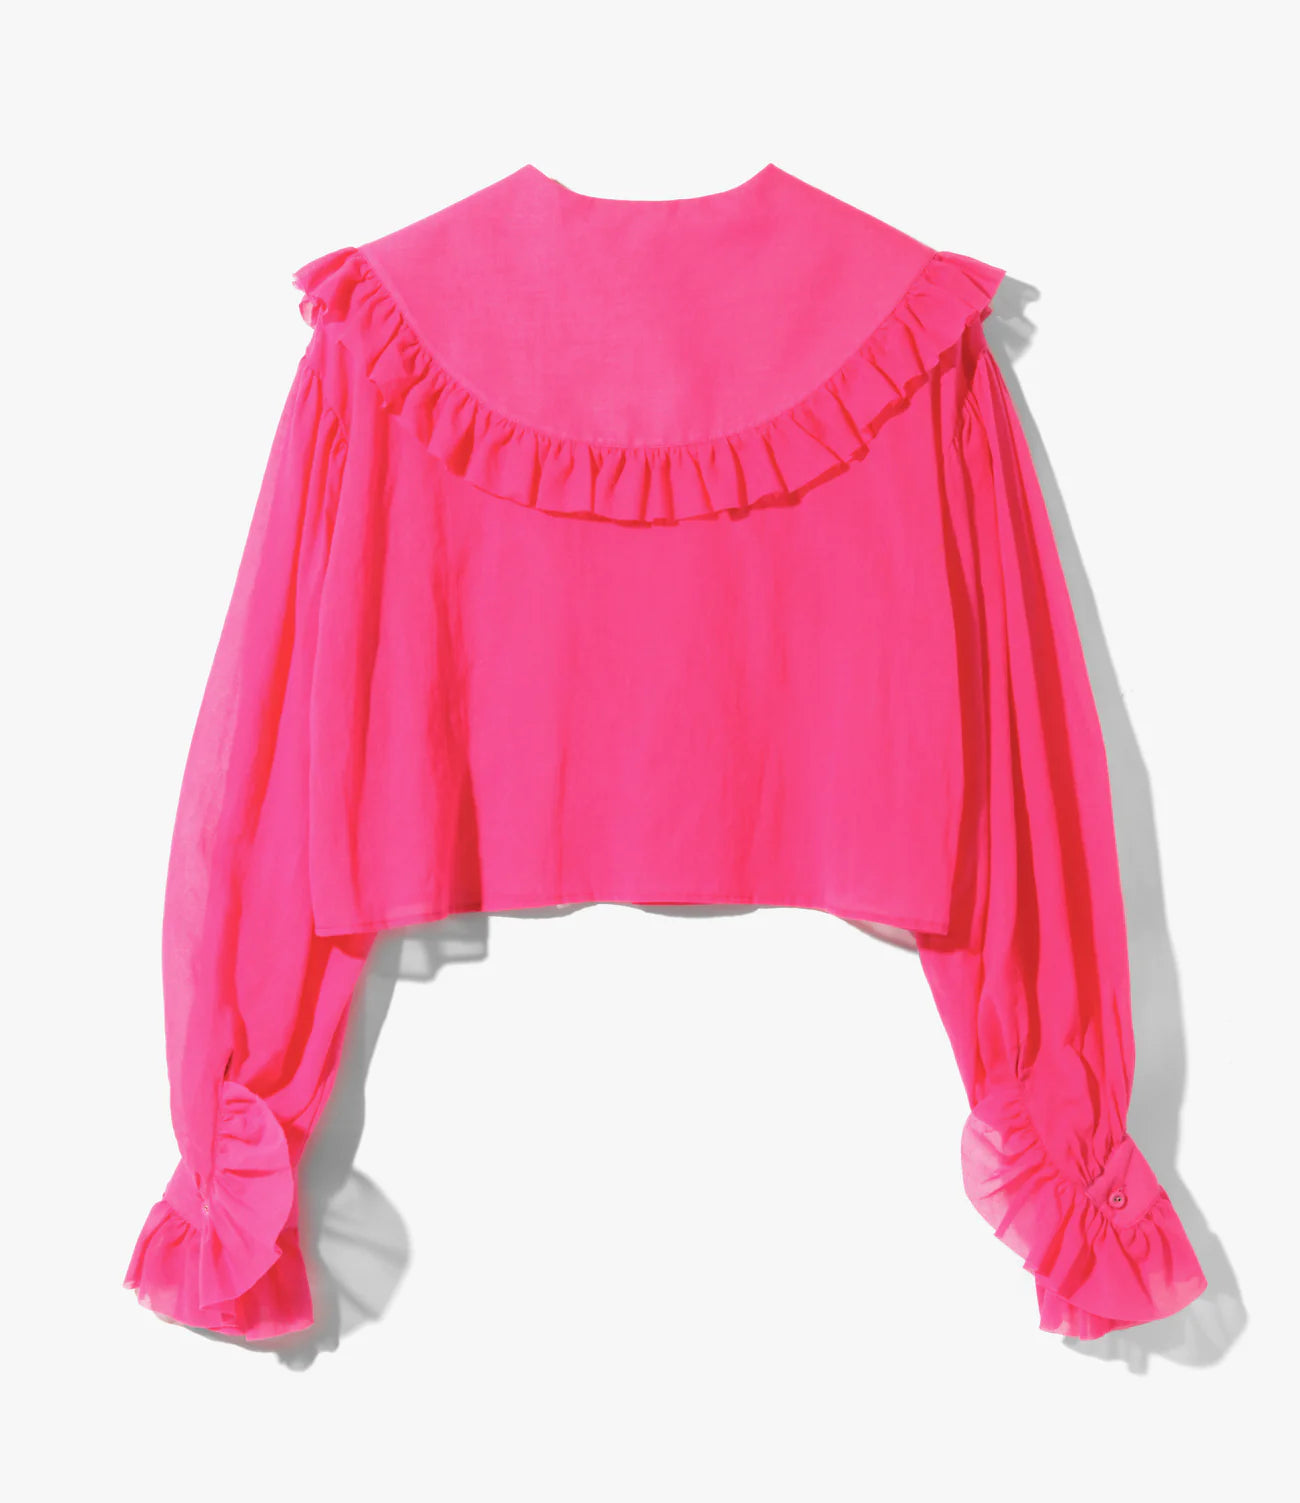 RhodolirioN Spencer Shirts -Boil - Pink